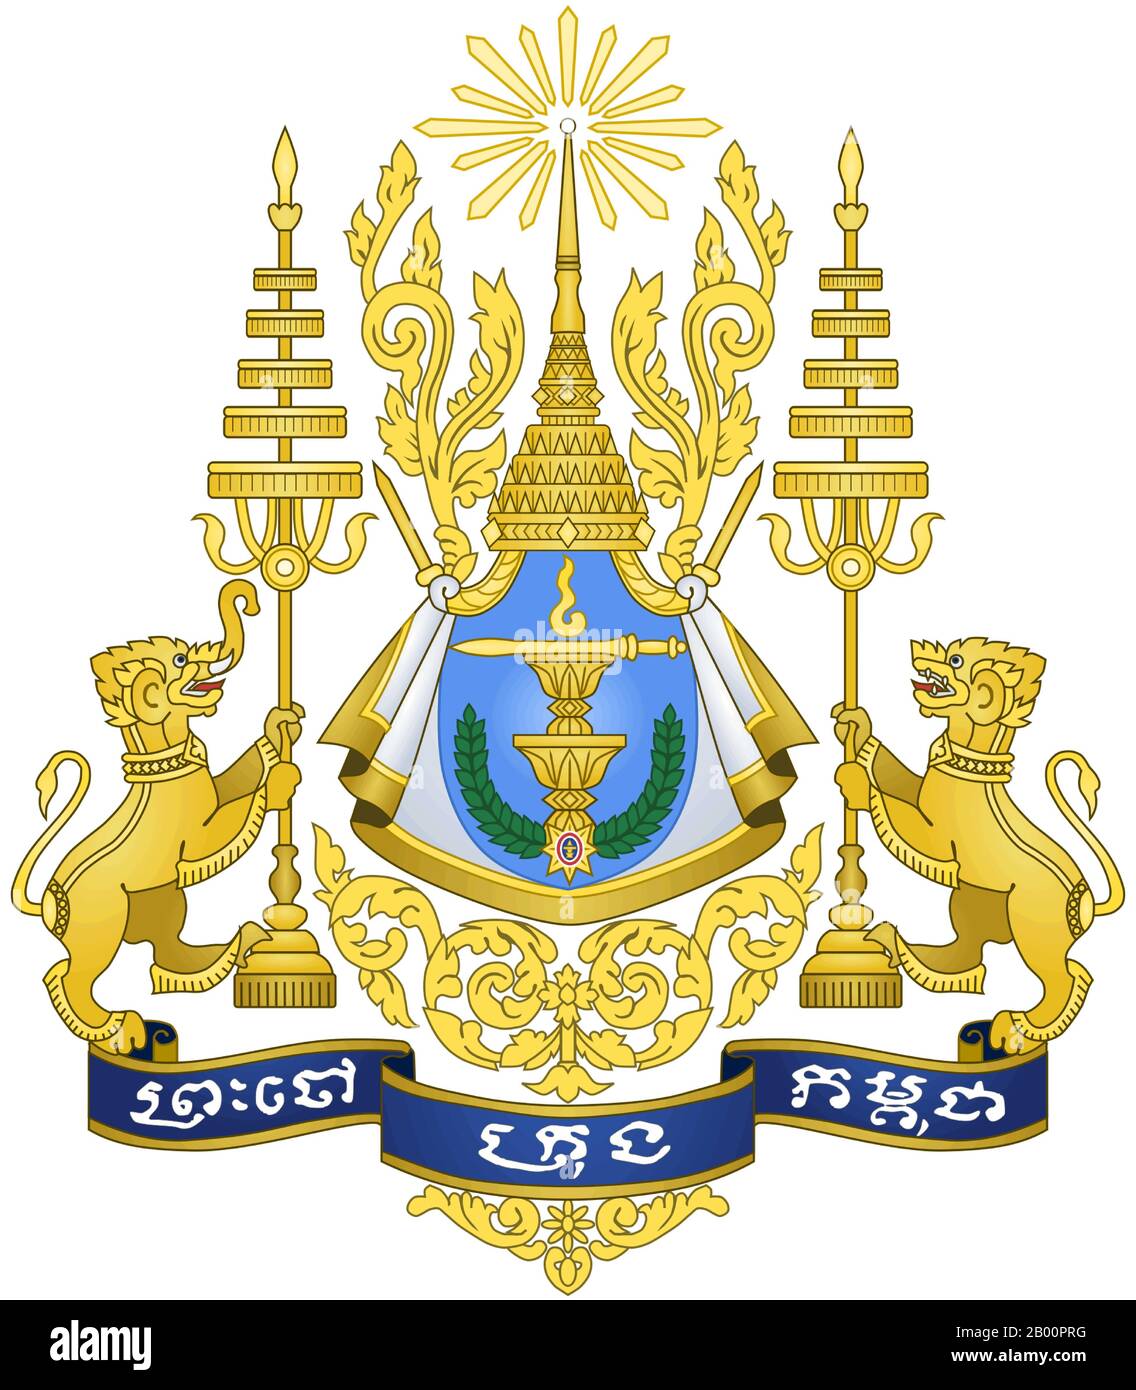 Kambodscha: Königliches Wappen. Sodacan (CC BY 2.0 License). Das königliche Wappen des Königreichs Kambodscha ist das Symbol der kambodschanischen Monarchie. Es existiert in irgendeiner Form nahe an der abgebildeten seit der Gründung des unabhängigen Königreichs Kambodscha im Jahr 1953. Es ist das Symbol auf dem königlichen Standard des regierenden Monarchen von Kambodscha, Norodom Sihamoni (bestiegen 2004). Stockfoto